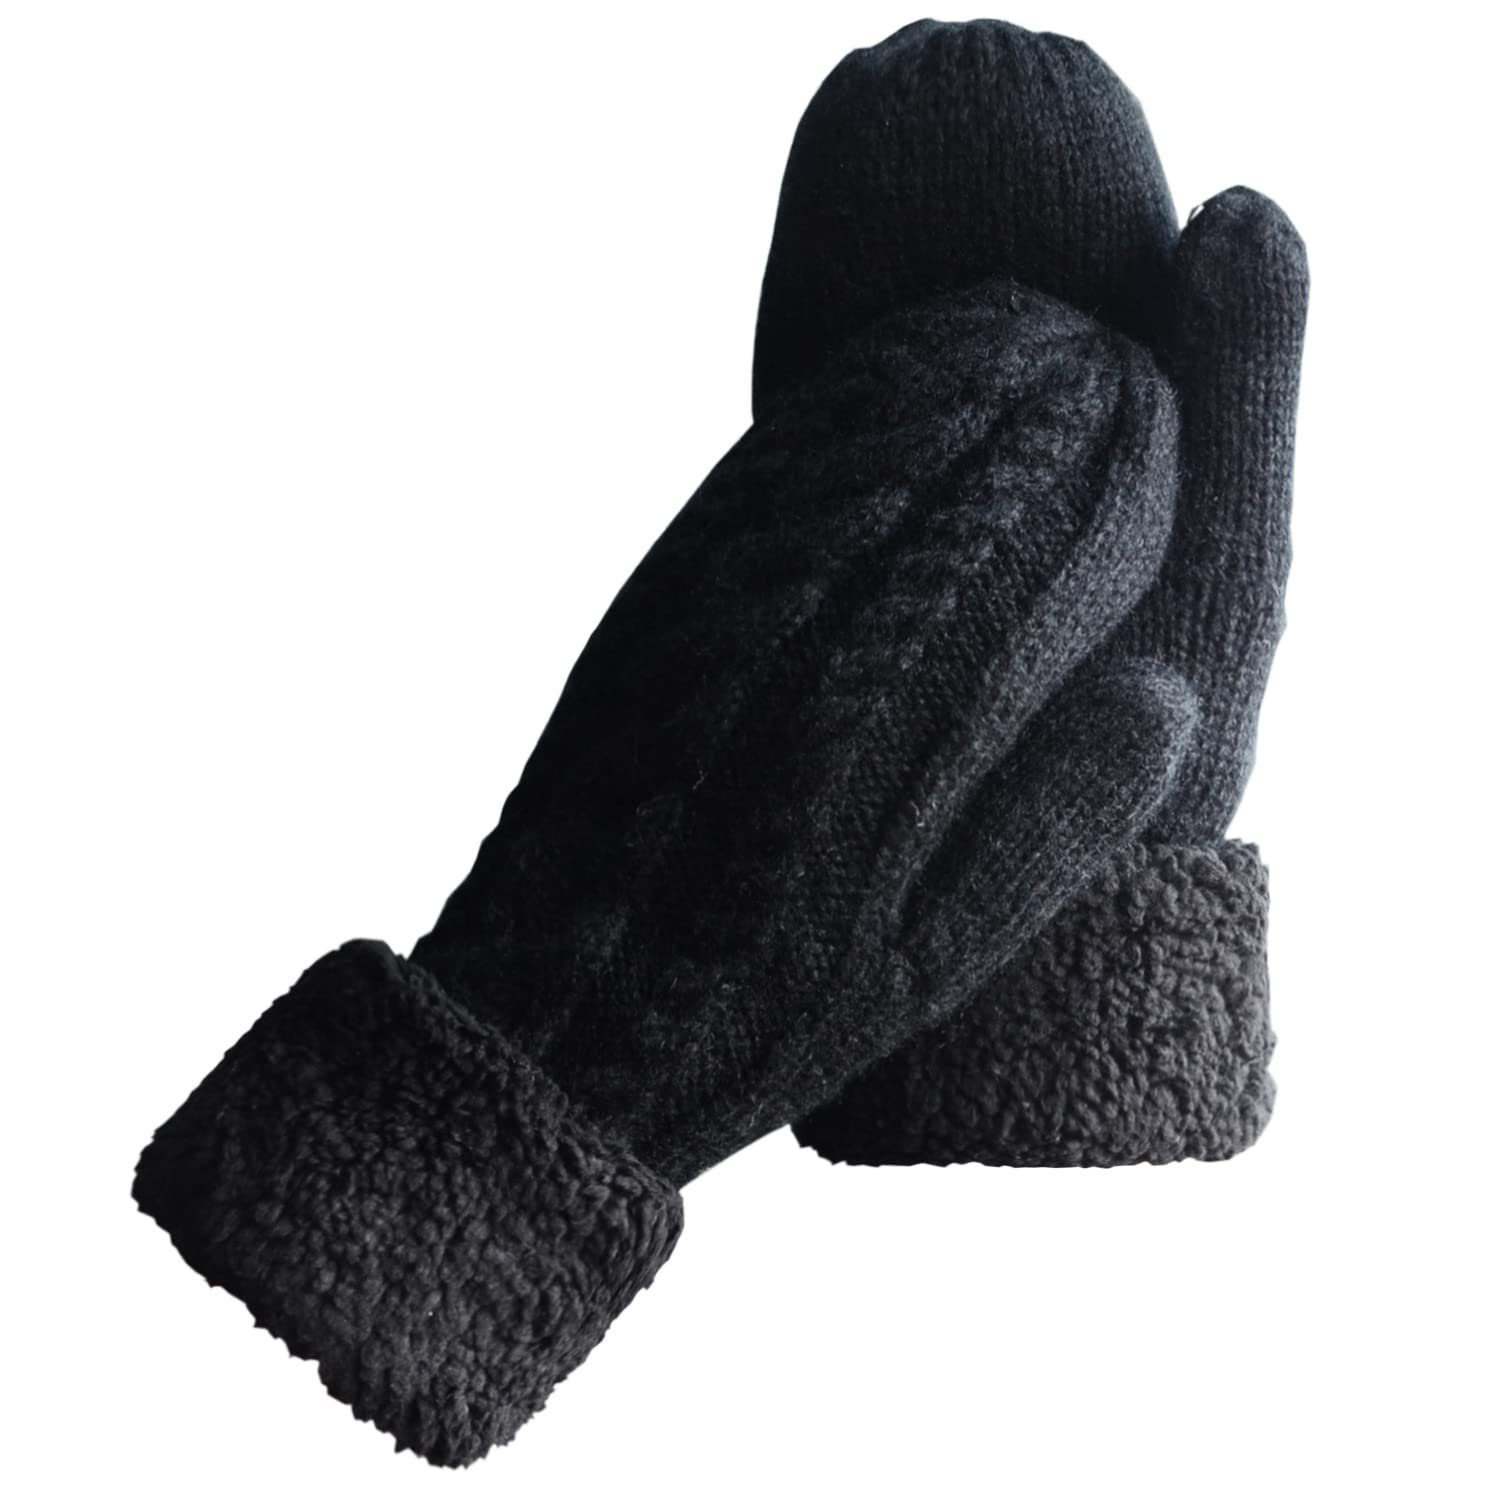 YYV Strickhandschuhe Damen Winterhandschuhe Warm Lining,Gemütliche Wolle Strick Dicke Handschuhe Fäustlinge schwarz